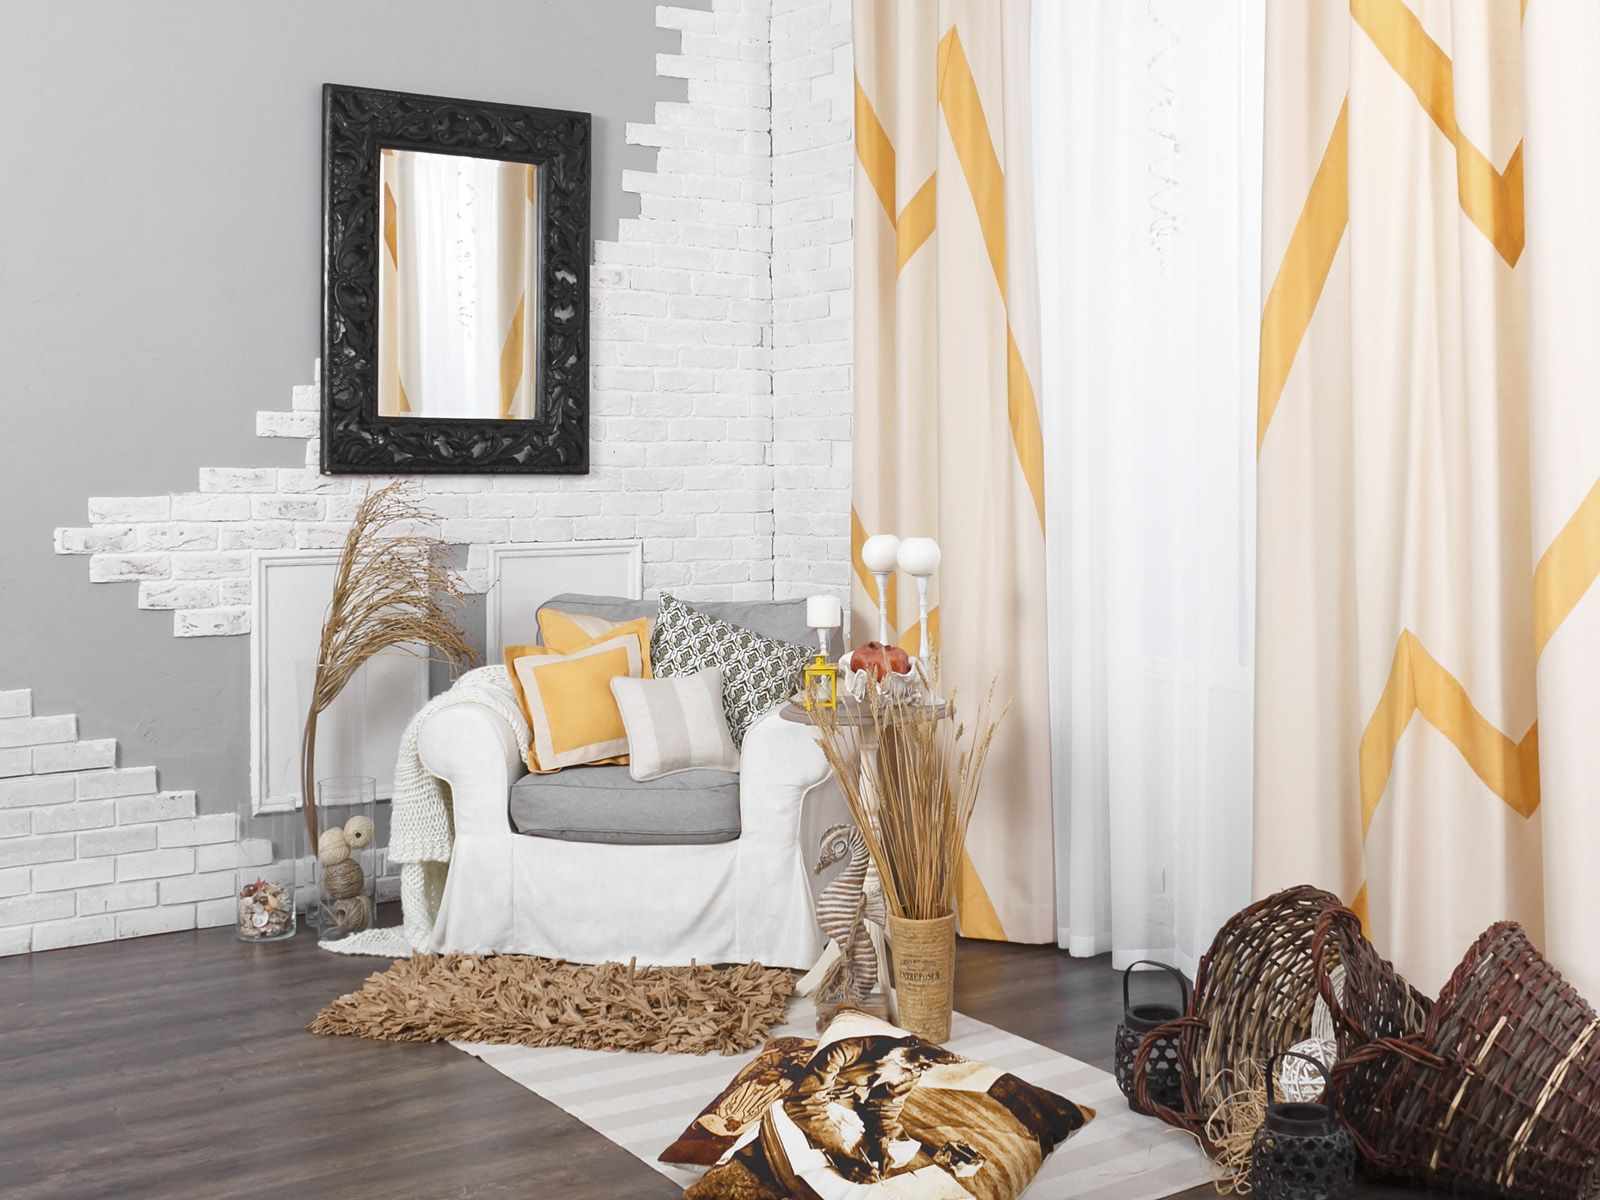 gaišas persiku krāsas kombinācijas piemērs dzīvokļa stilā